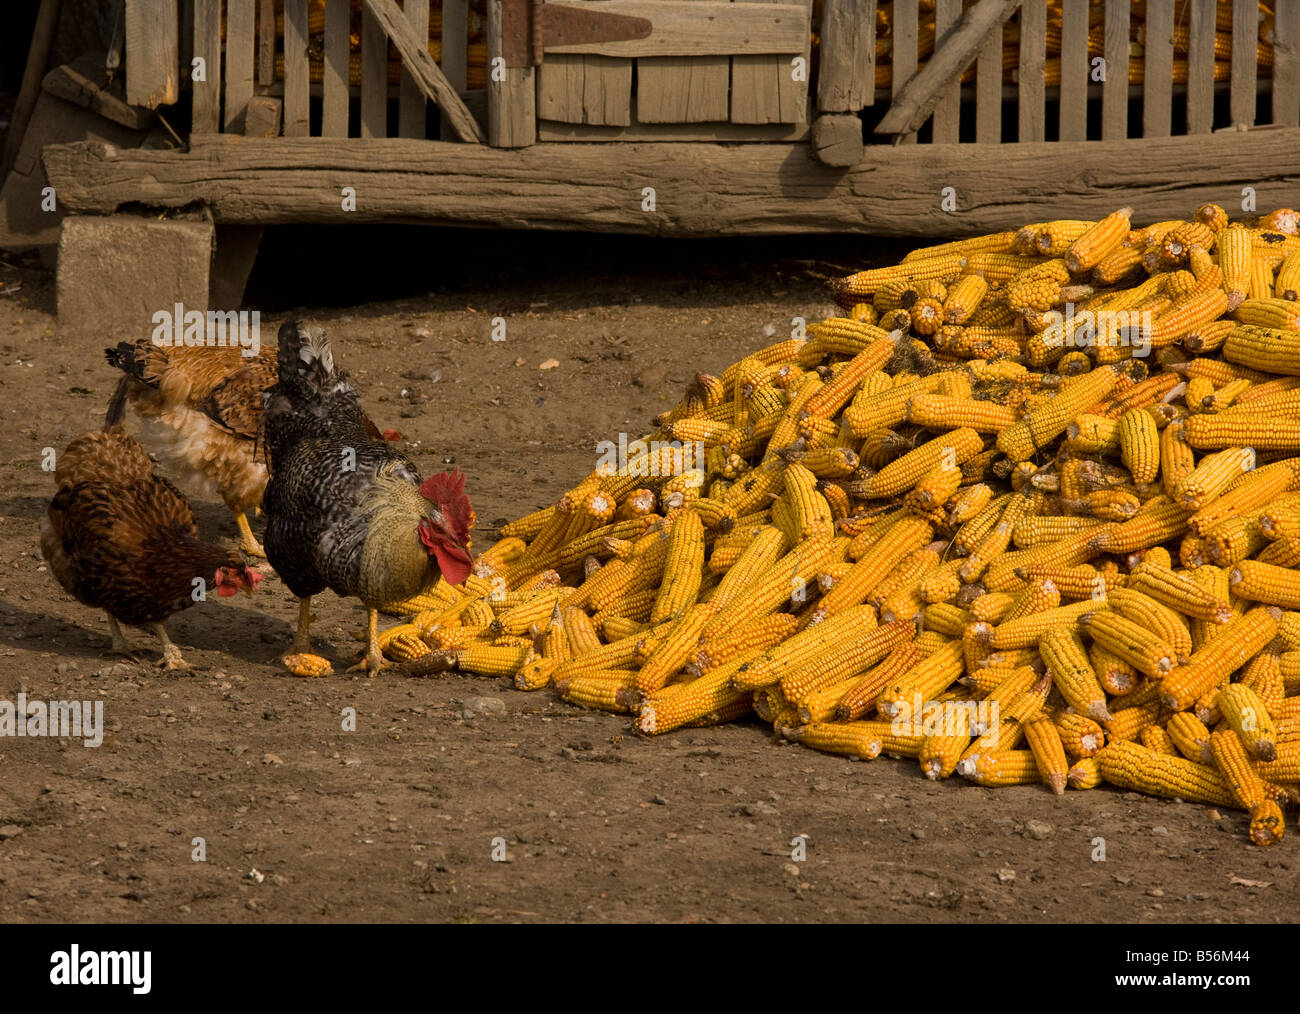 Polli in cortile a mangiare dalla pila di mais o granoturco autunno Romania Foto Stock